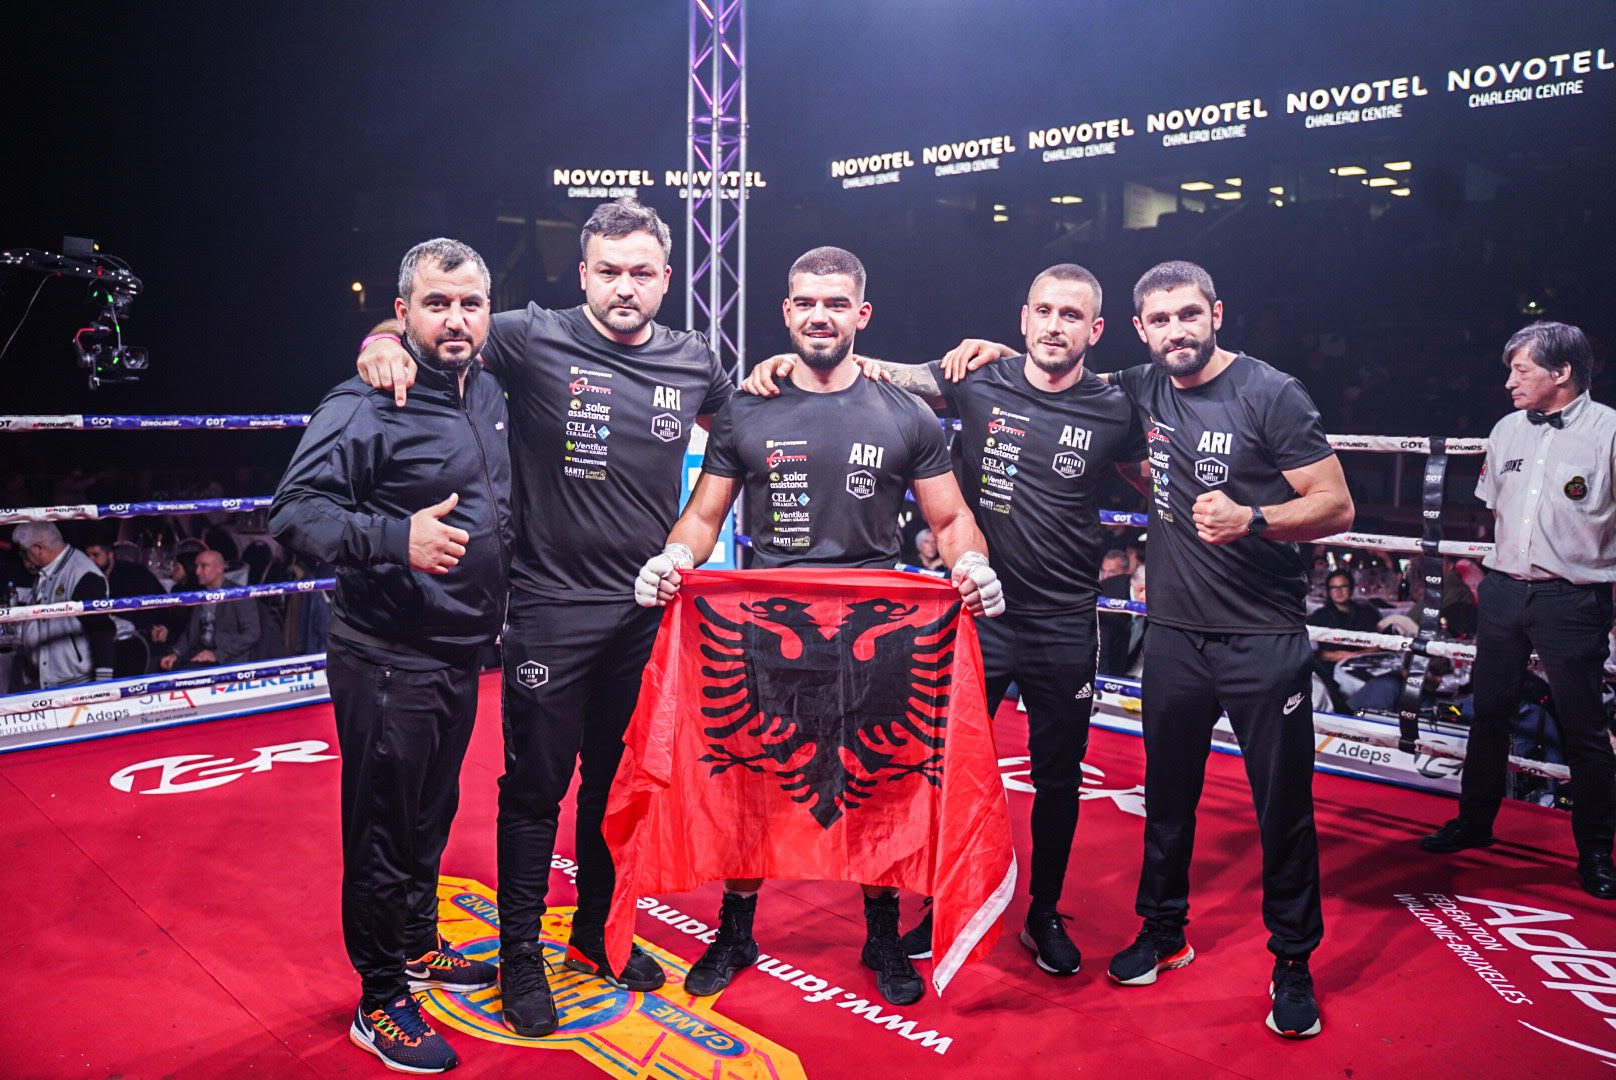 Boksieri kosovar e shpartallon keq serbin në ring – Edhe një fitore për Ari Avdimetaj